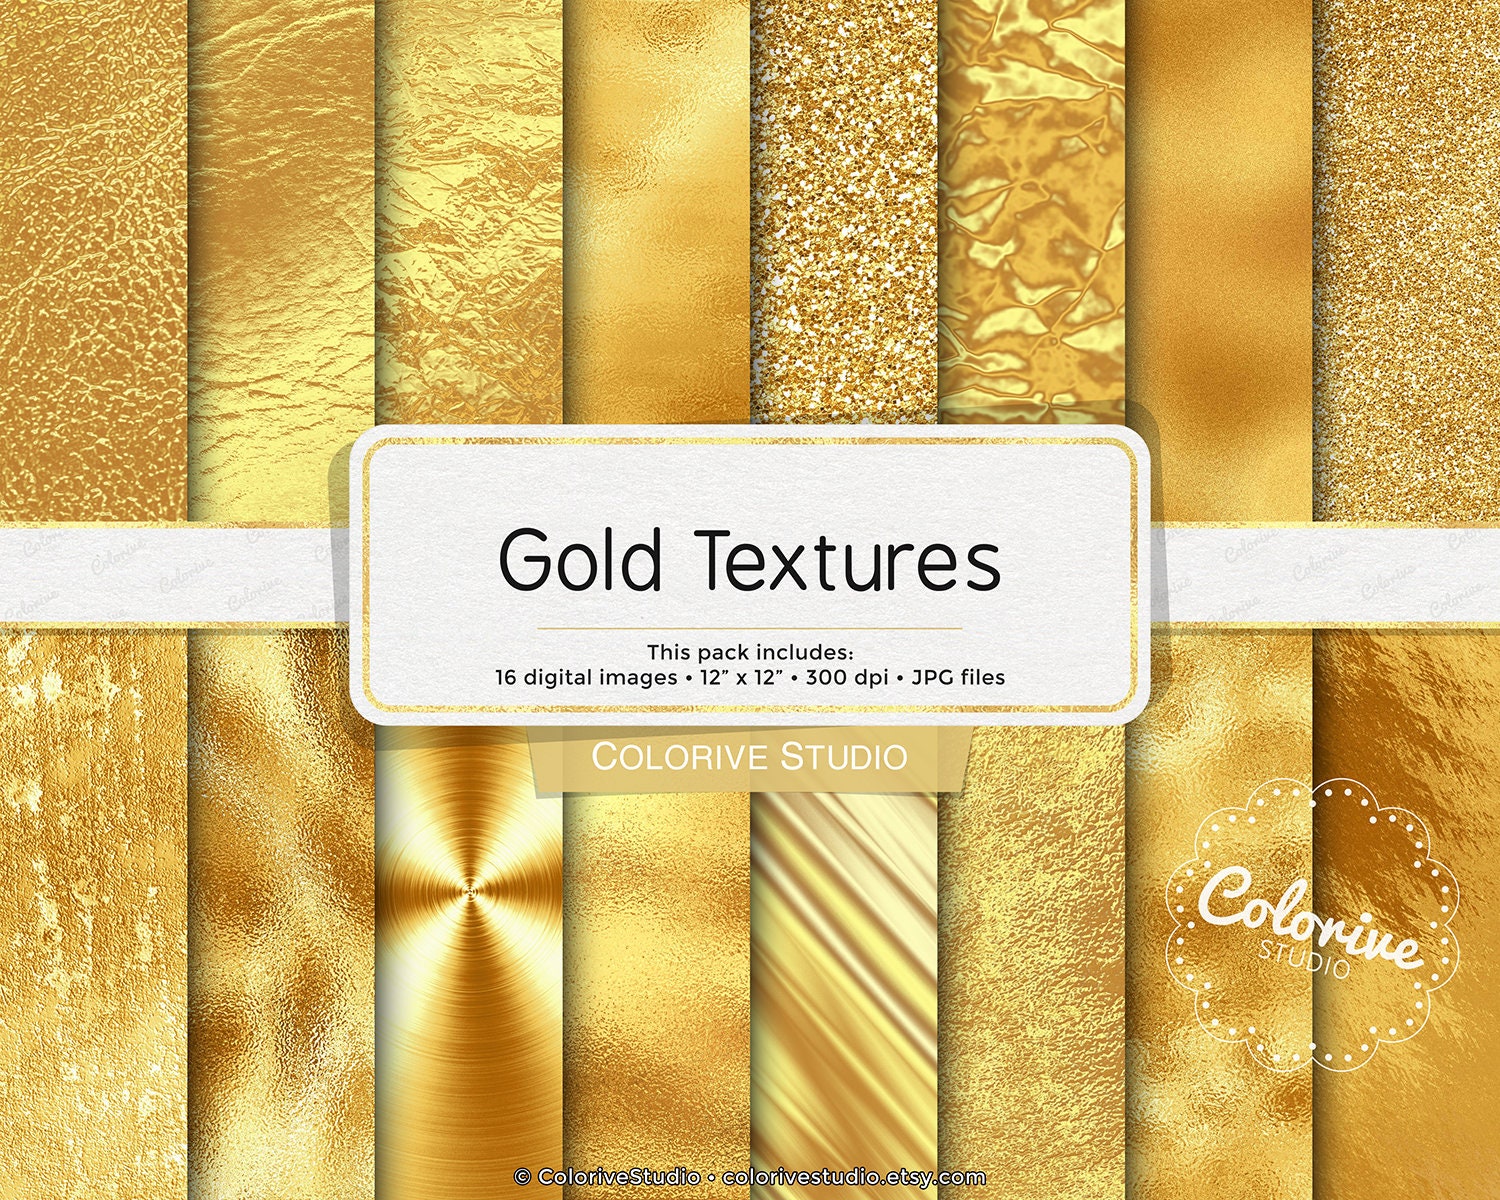 Với giấy kỹ thuật số cực kỳ độc đáo, chất liệu da và màu vàng kim loại sẽ làm bạn cảm thấy đắm say với vẻ đẹp đặc biệt của nó. Hãy đến và khám phá những chi tiết tuyệt vời mà sản phẩm này mang lại, trải nghiệm cảm giác đắm chìm trong vô vàn những sắc màu tuyệt đẹp.